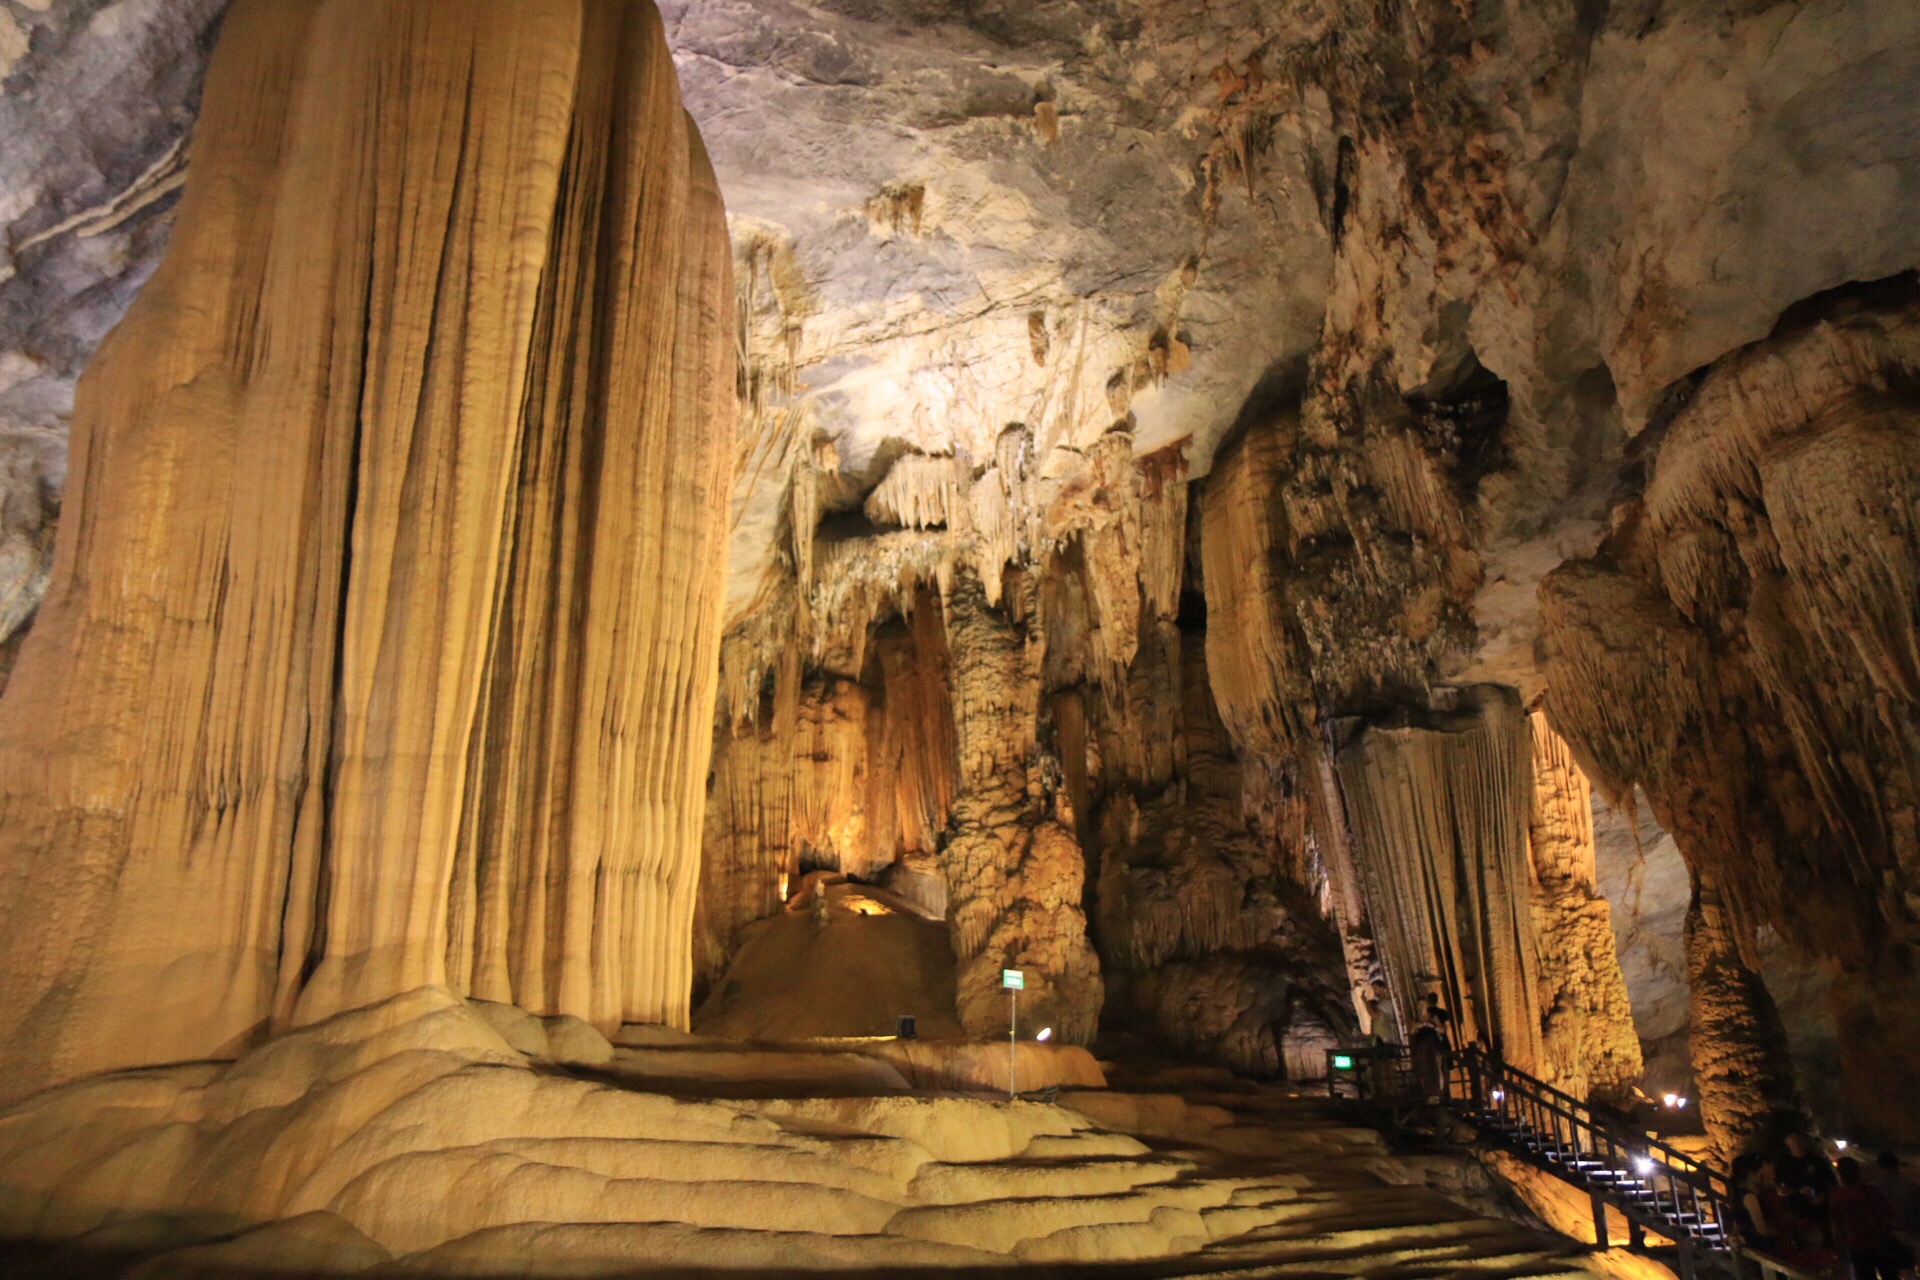 Nach einer etwas engeren Stelle, war die Höhle hier wieder 30-40 Meter hoch.